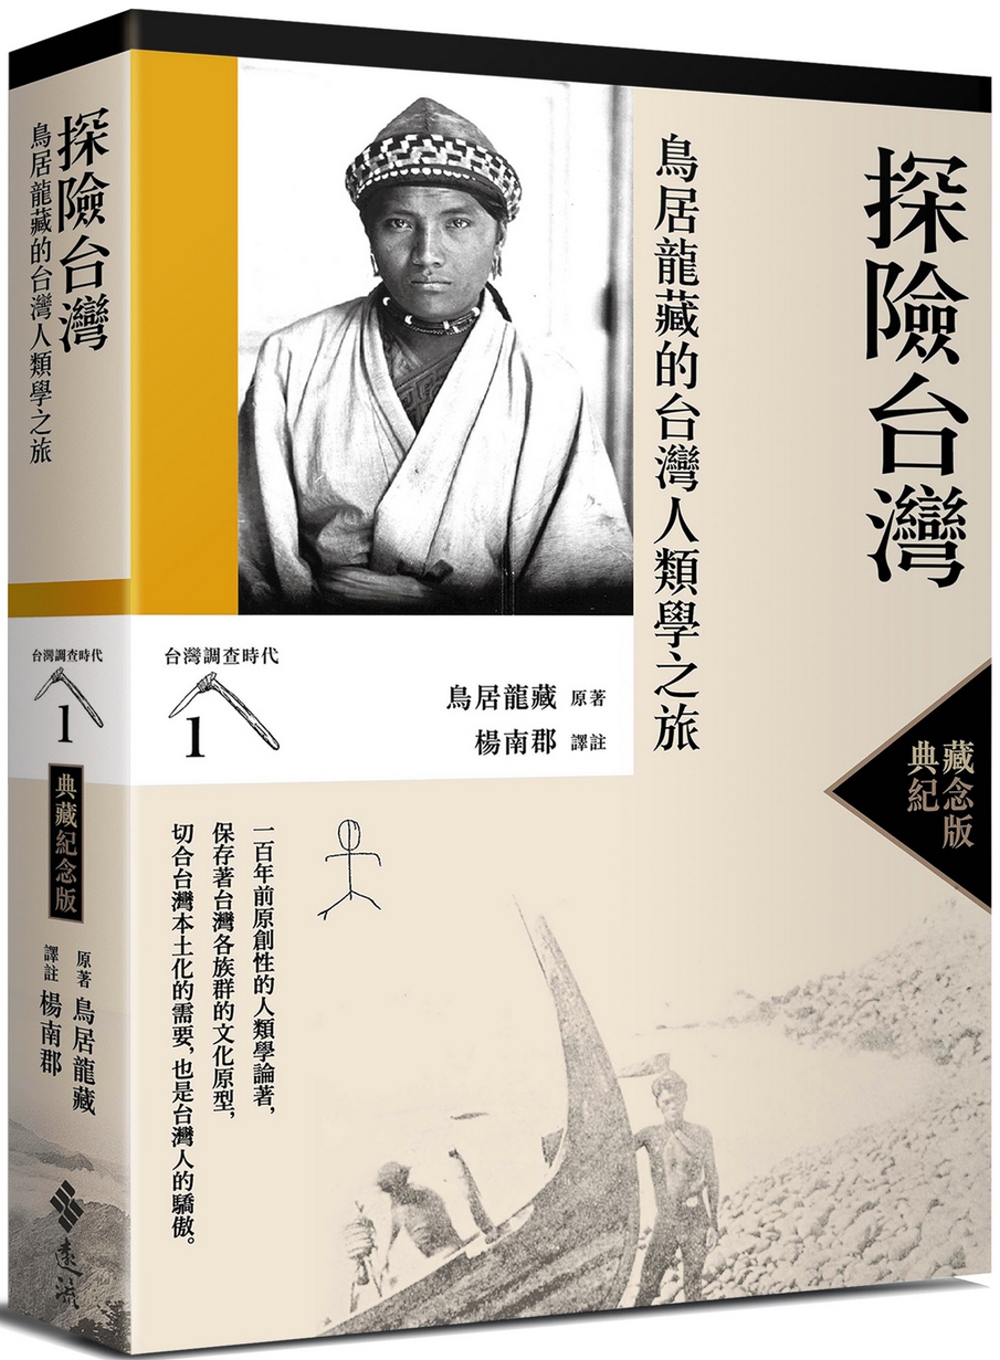 探險台灣：鳥居龍藏的台灣人類學之旅（台灣調查時代1）（典藏紀念版）